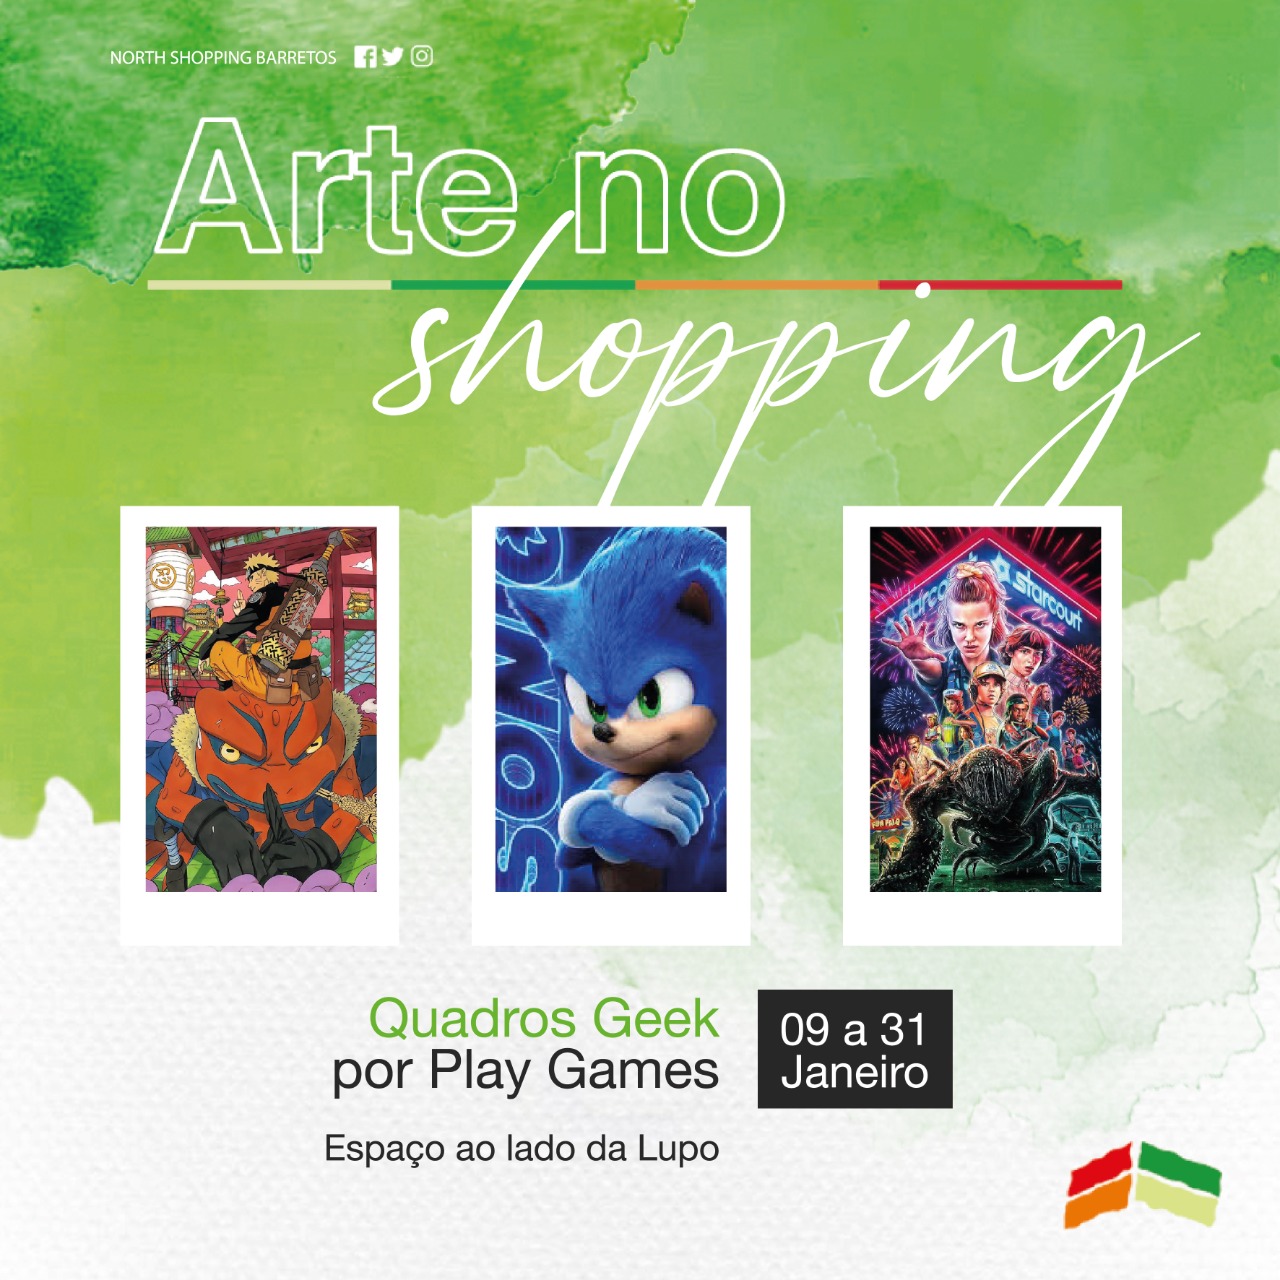 North Shopping Barretos recebe exposição de quadros Geek, a partir do dia 9 de janeiro